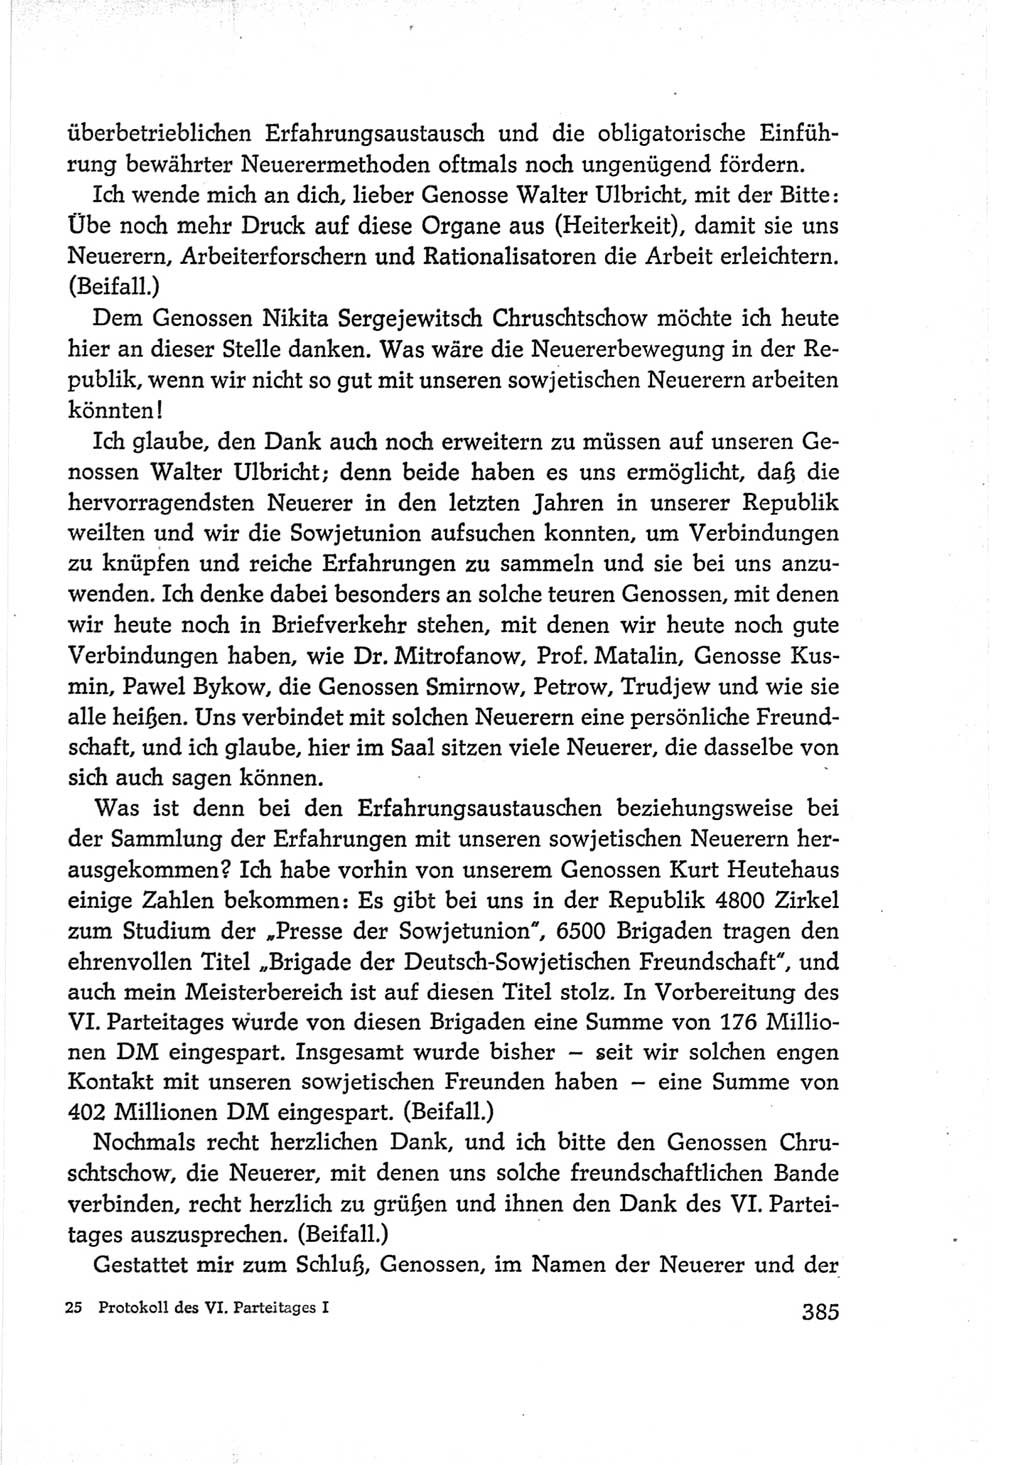 Protokoll der Verhandlungen des Ⅵ. Parteitages der Sozialistischen Einheitspartei Deutschlands (SED) [Deutsche Demokratische Republik (DDR)] 1963, Band Ⅰ, Seite 385 (Prot. Verh. Ⅵ. PT SED DDR 1963, Bd. Ⅰ, S. 385)